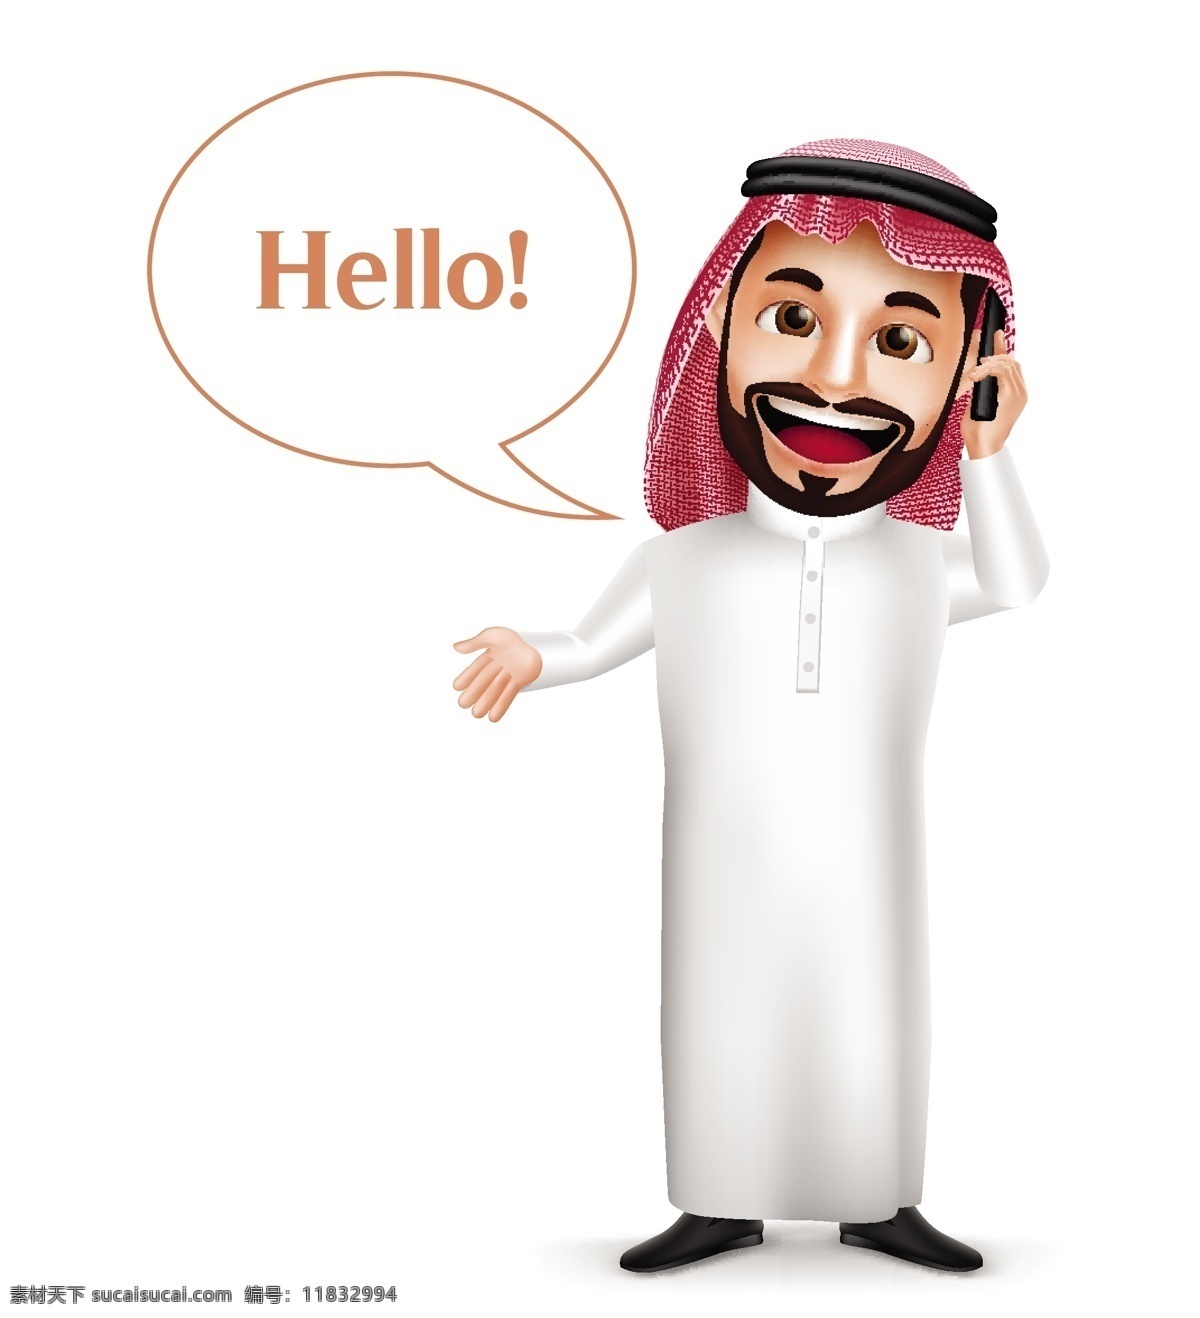 打电话 阿拉伯 男性 插画 对话框 阿拉伯男人 男性插画 卡通男人 卡通插画 可爱卡通 卡通插图 日常生活 矢量人物 矢量素材